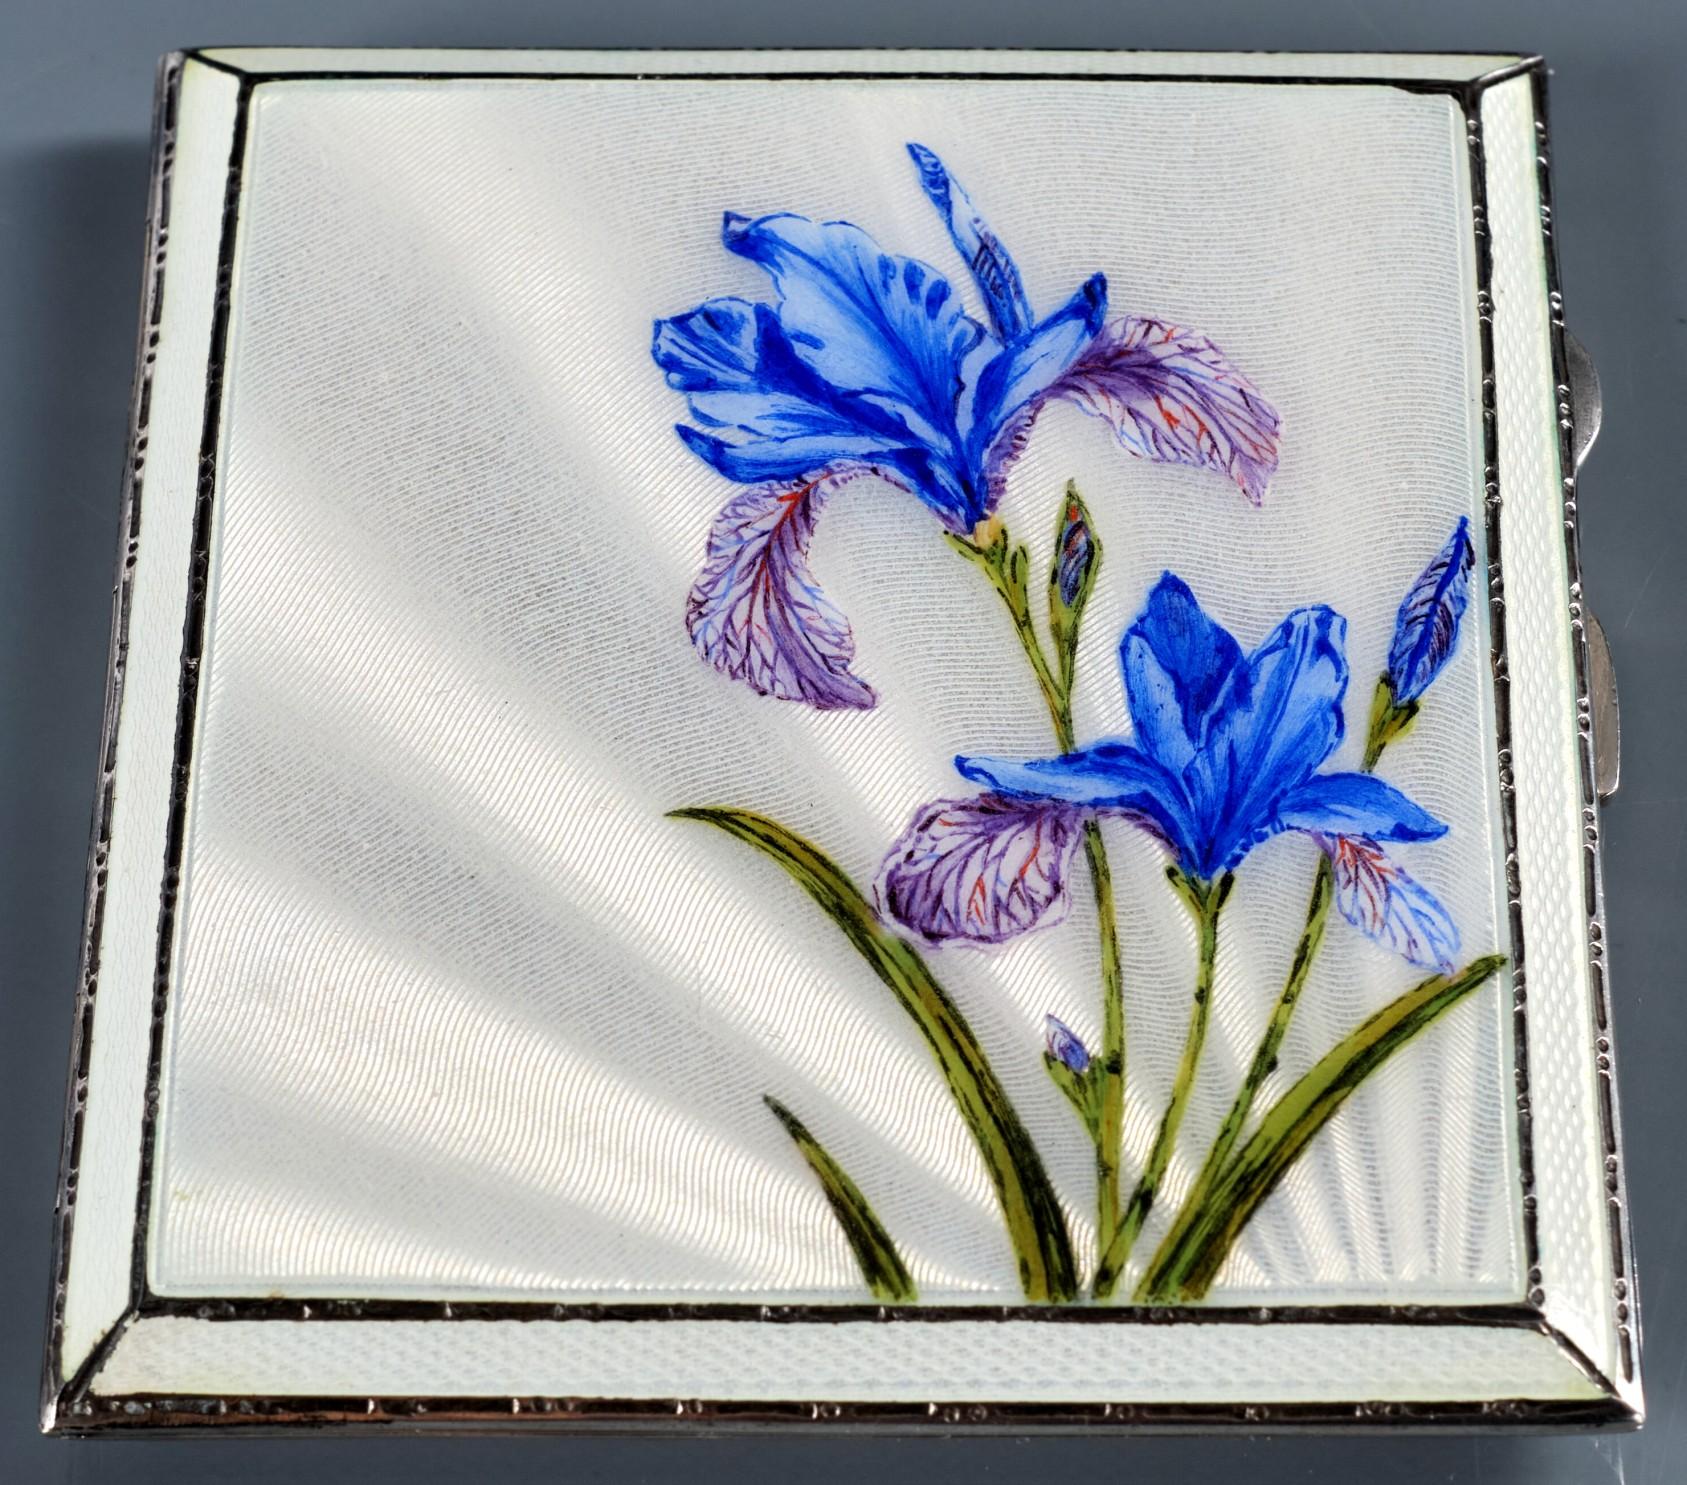 Die Vorderseite des Gehäuses zeigt eine exquisite handgemalte Tafel mit Irisblüten in Lavendel-, Königsblau- und Grüntönen vor einem strahlend weiß emaillierten, maschinell bearbeiteten Feld. Der Scharnierdeckel öffnet sich zu einem reich